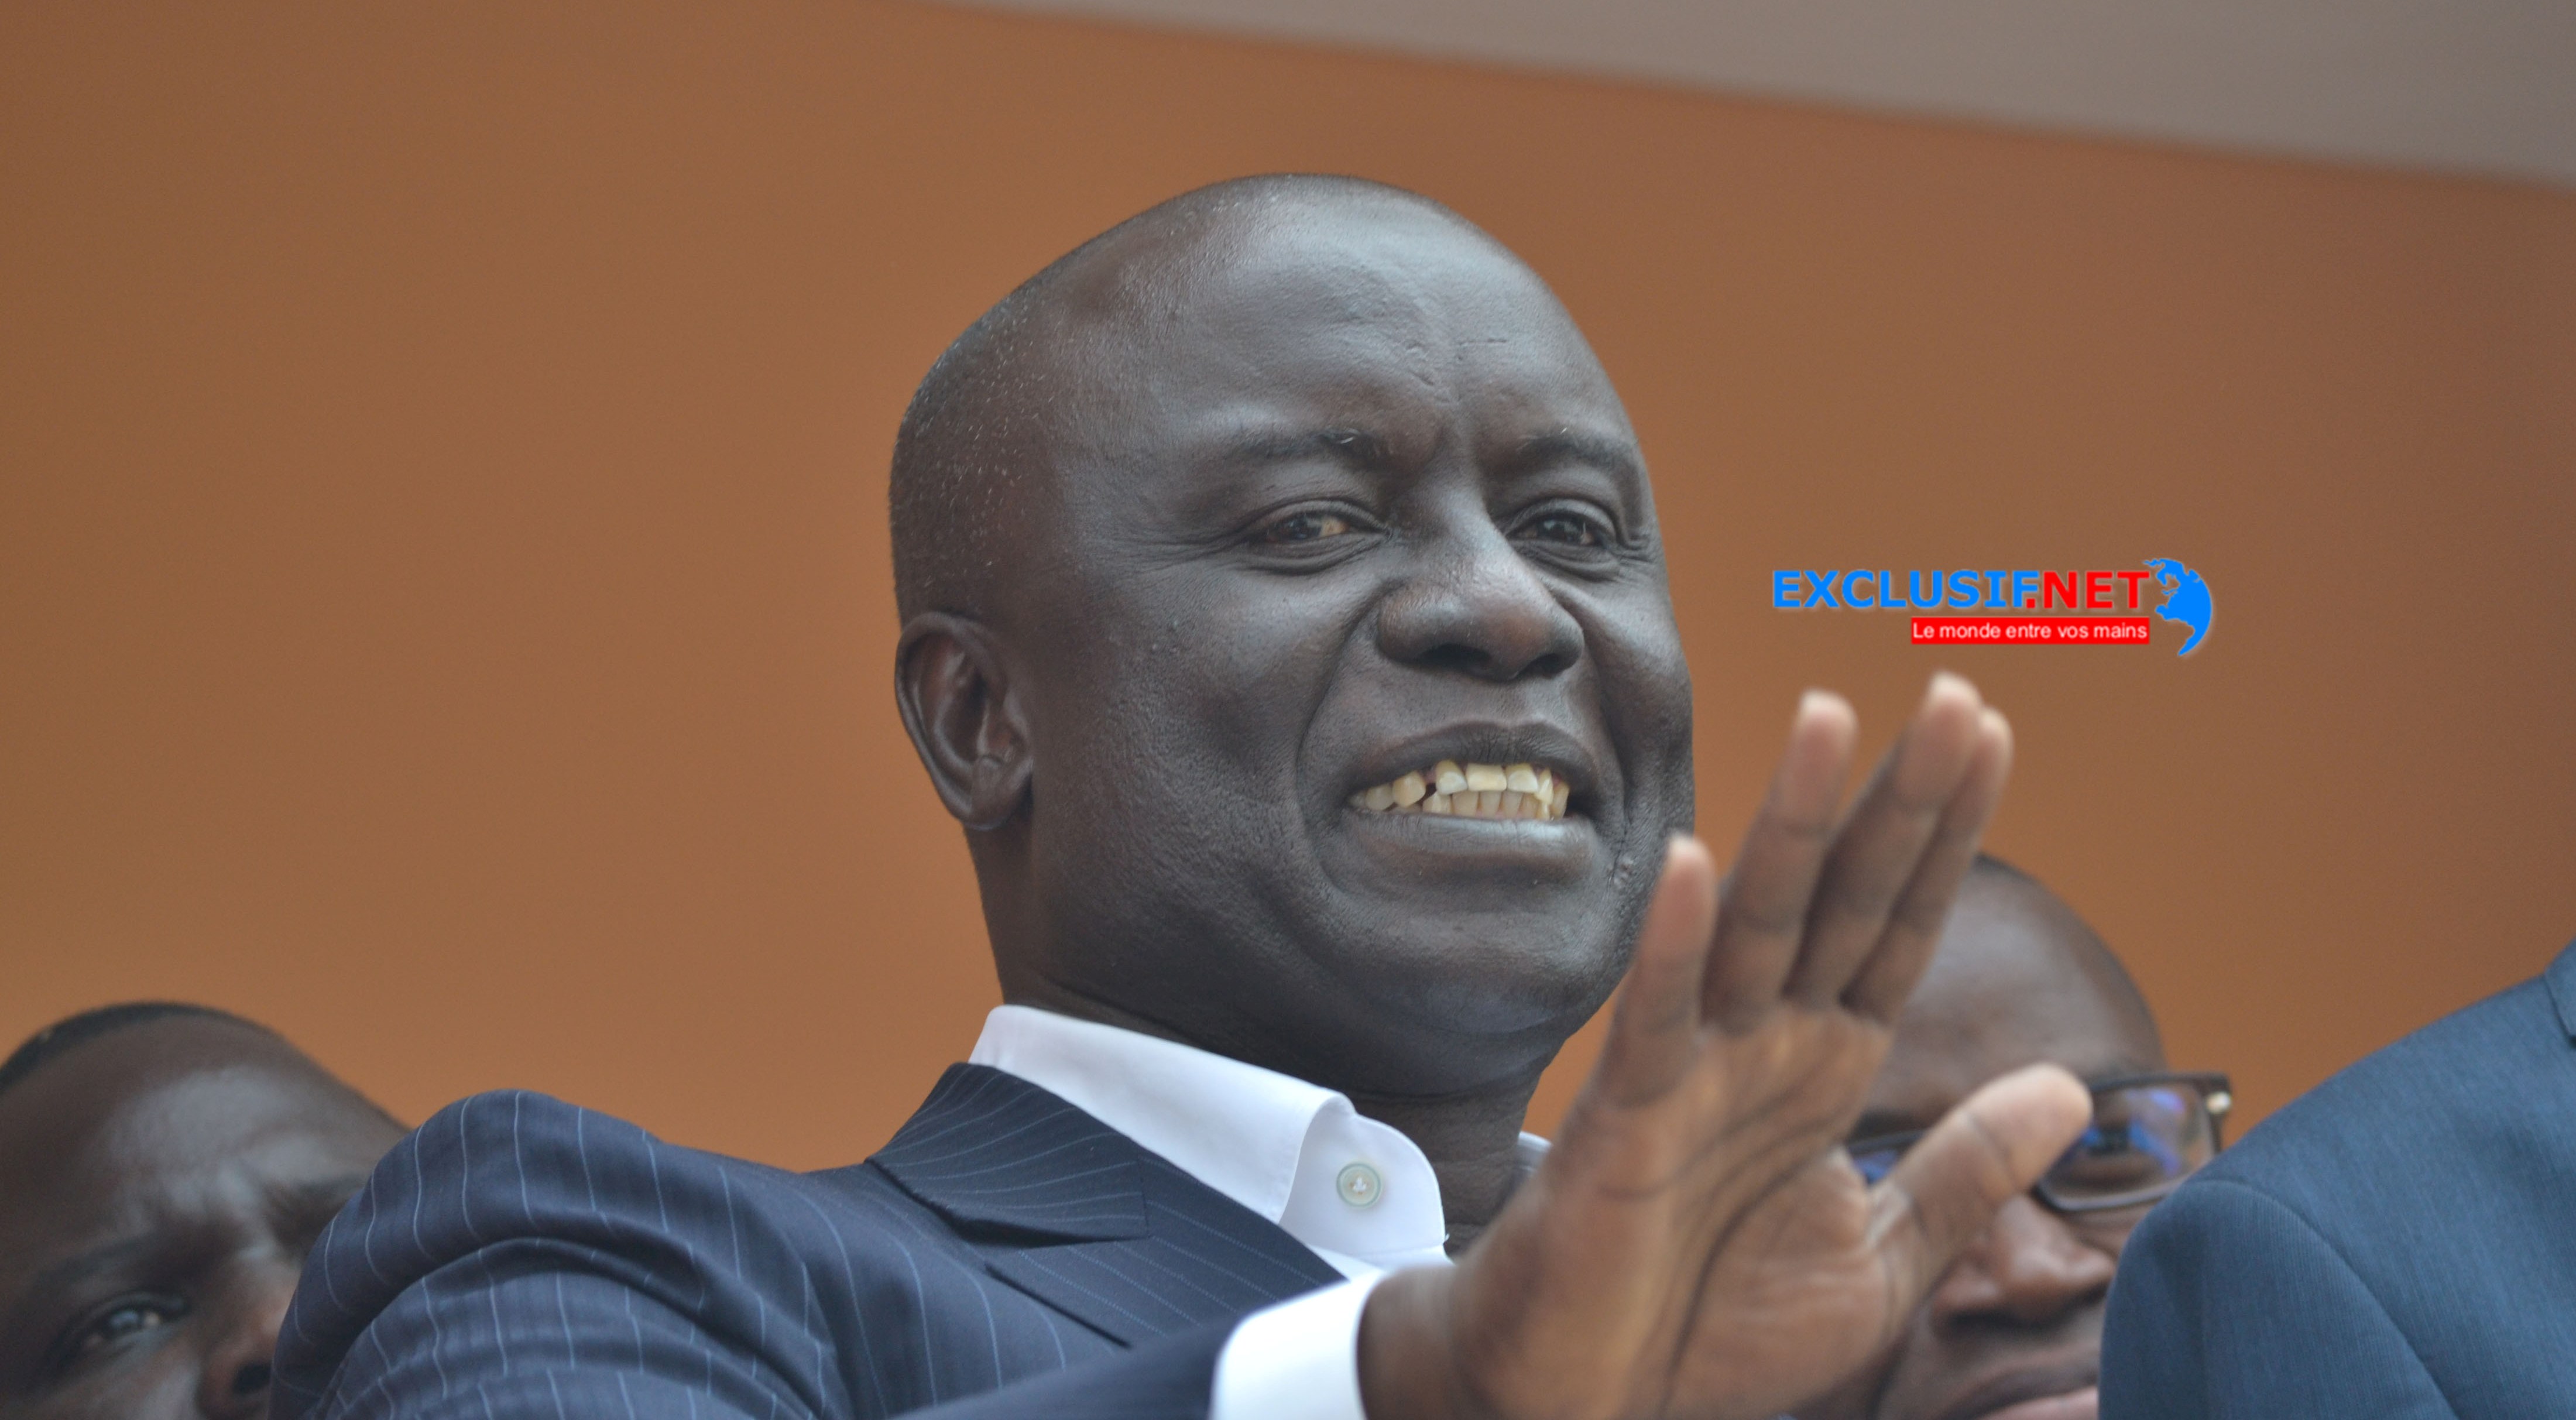 Présidentielle de 2019: Idrissa Seck est candidat